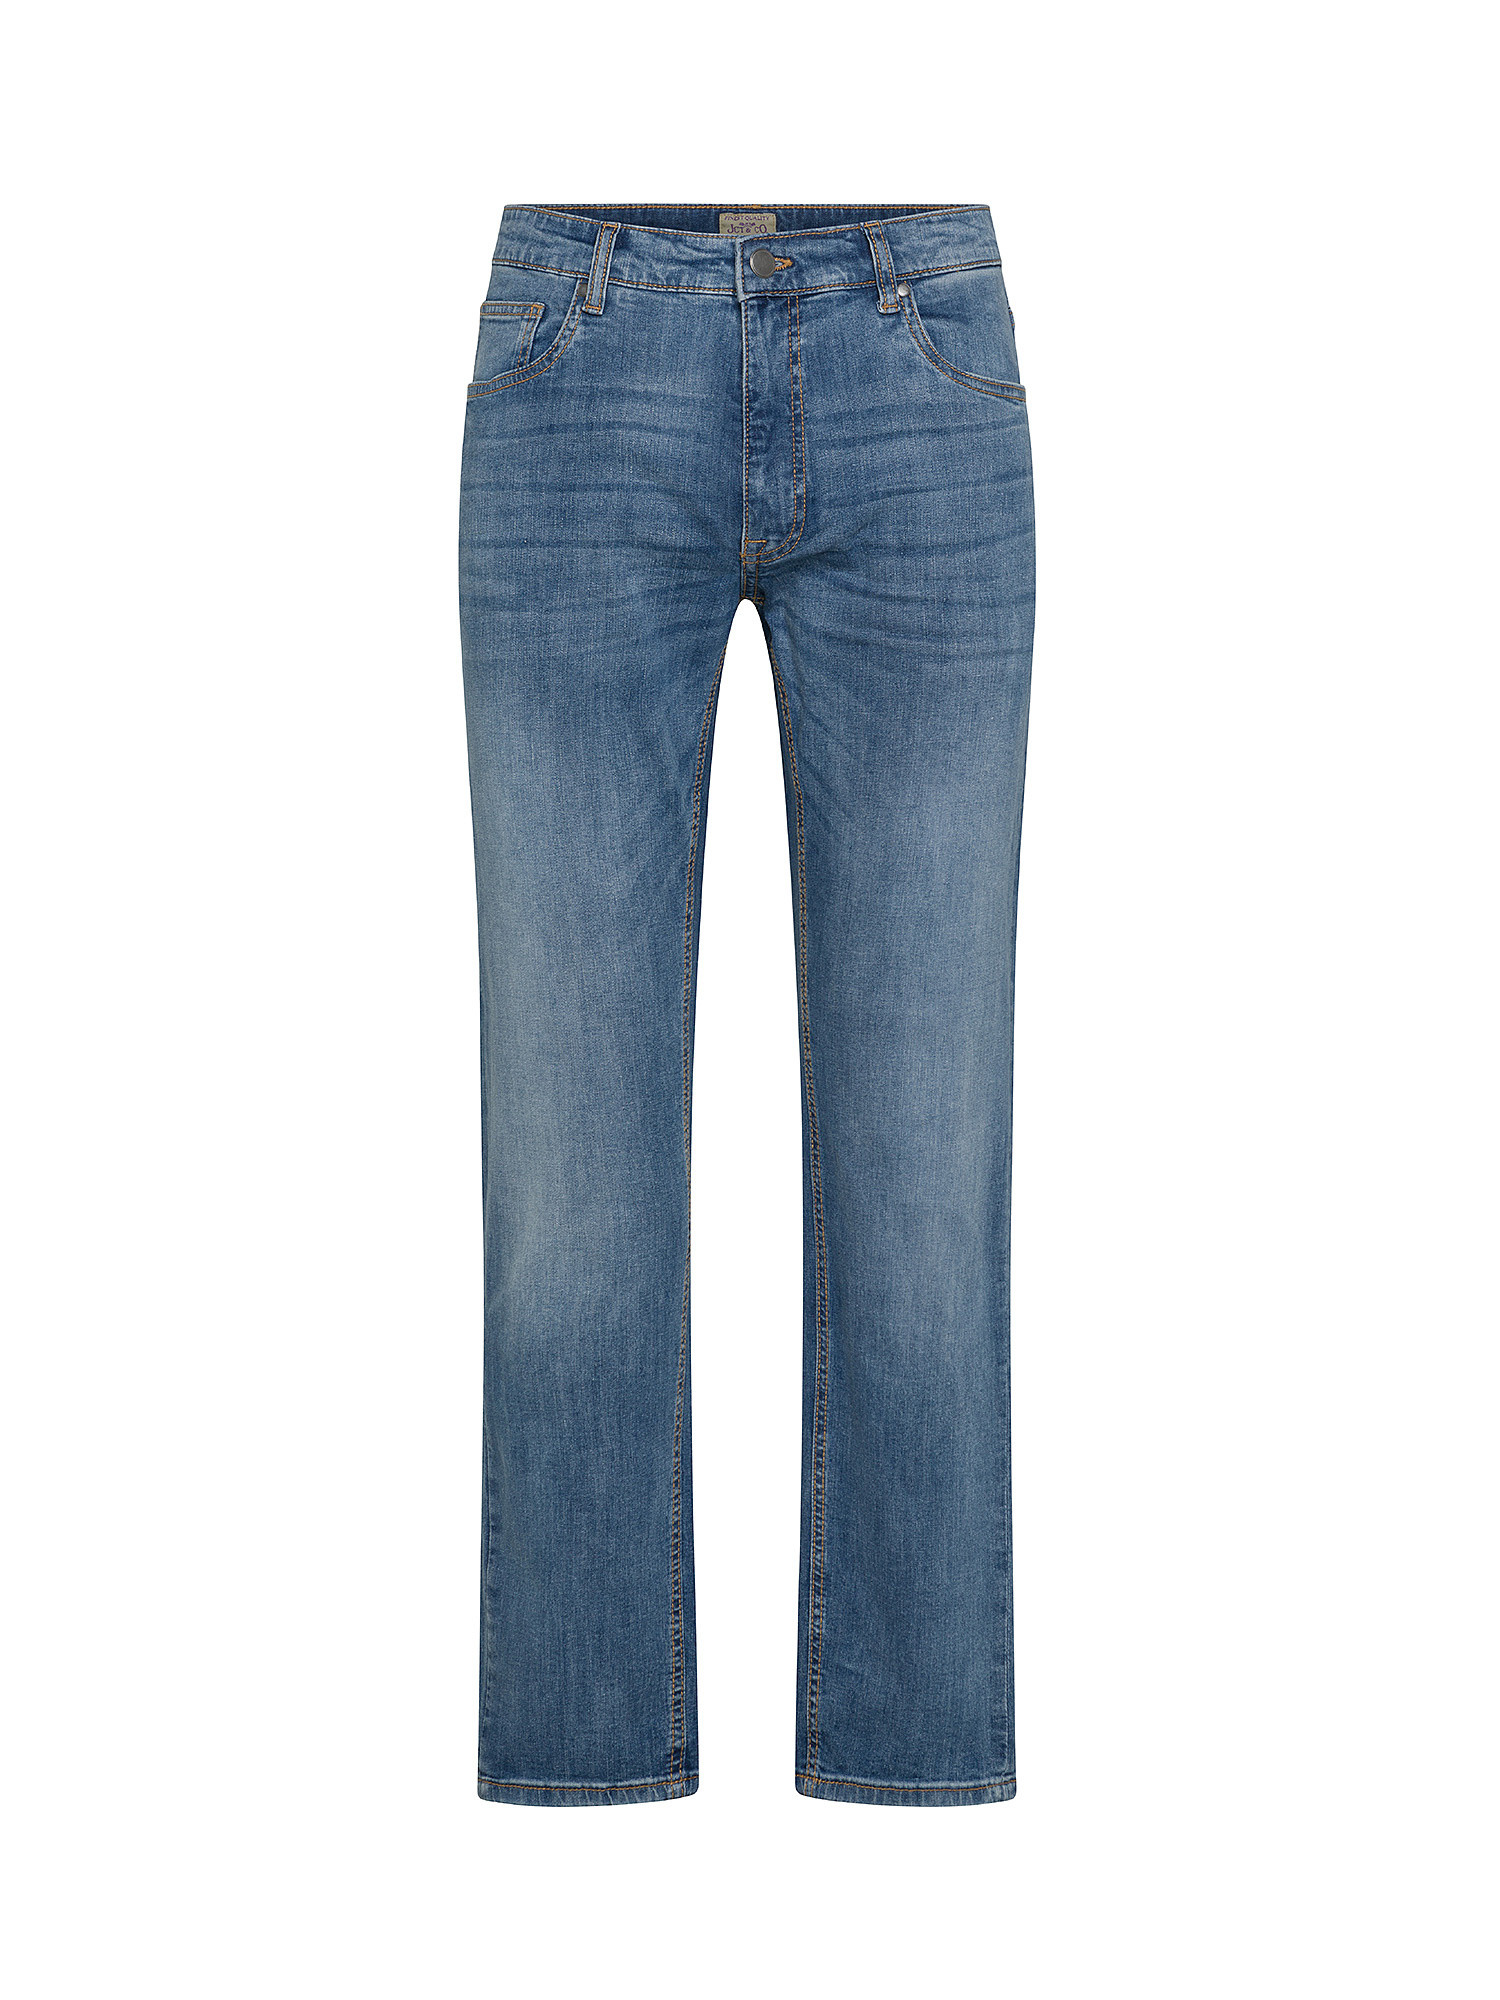 JCT - Five pocket jeans, Dark Blue, large image number 0